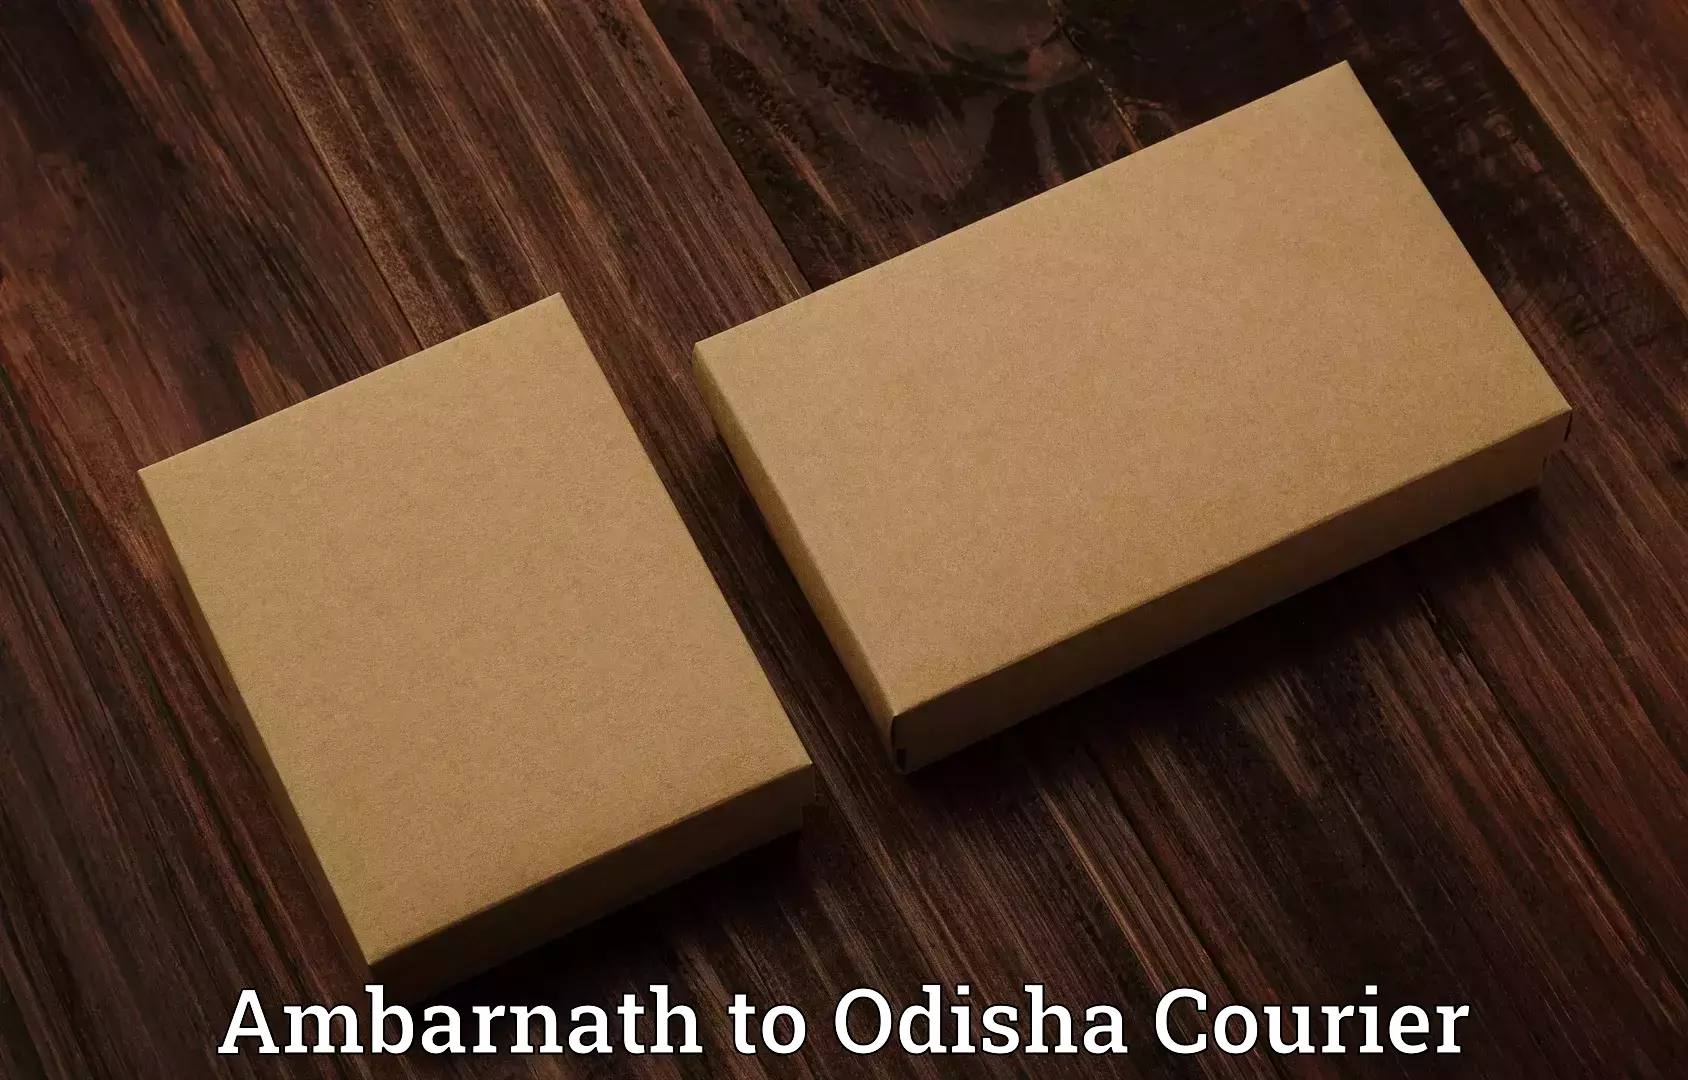 Luggage shipment specialists Ambarnath to Odisha